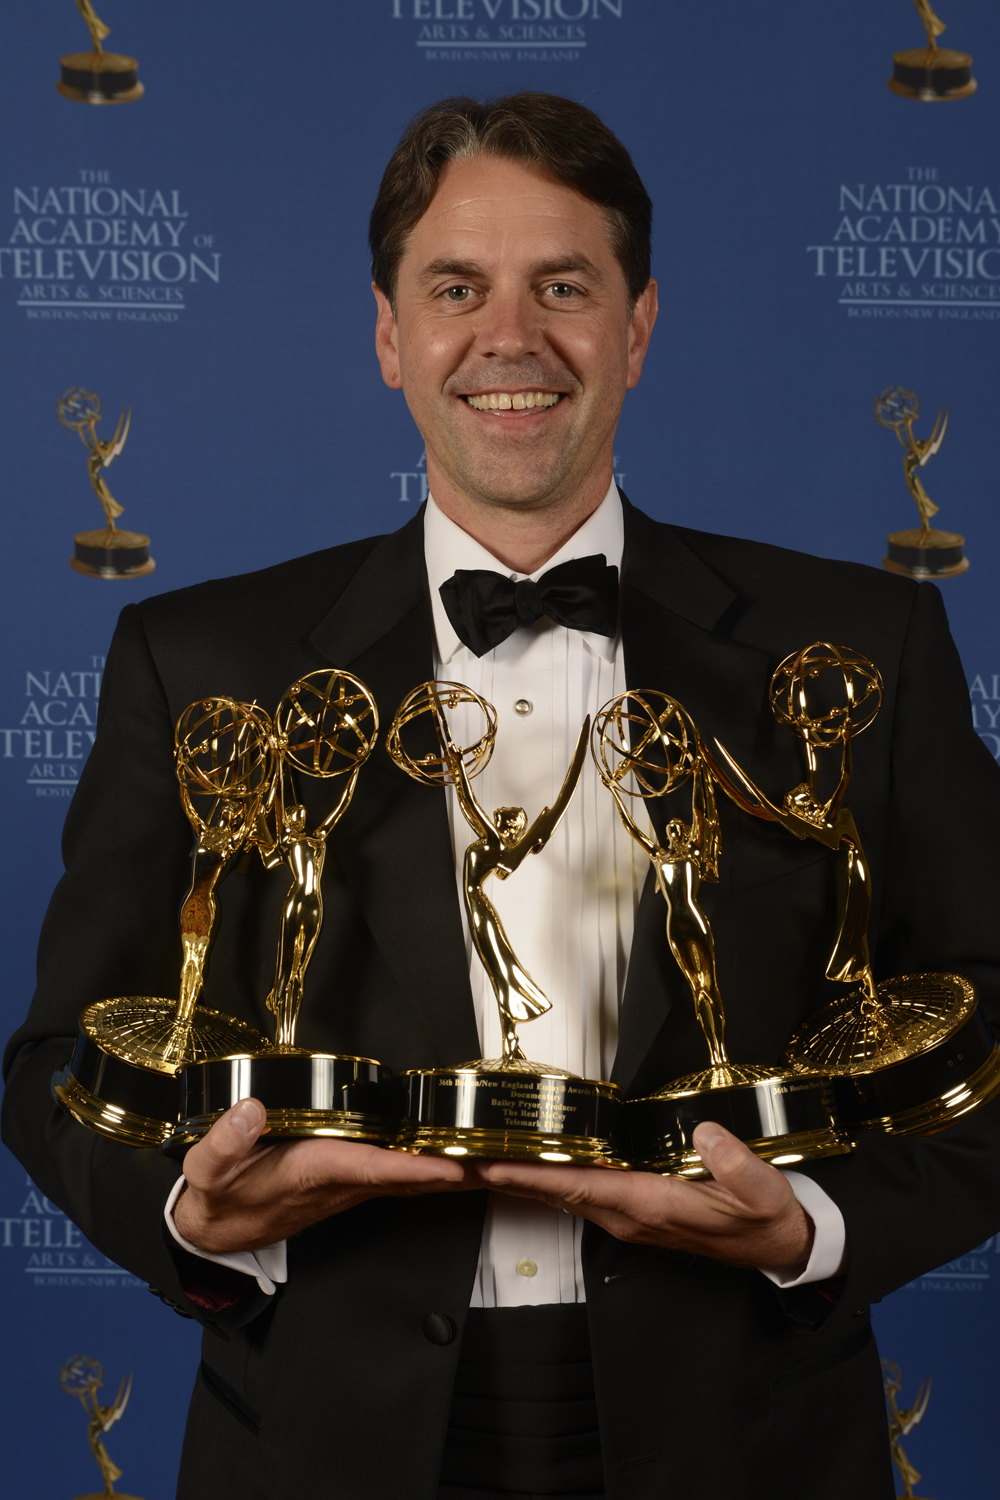 Winner of 5 Emmy® Awards in 2013 for the documentary film 